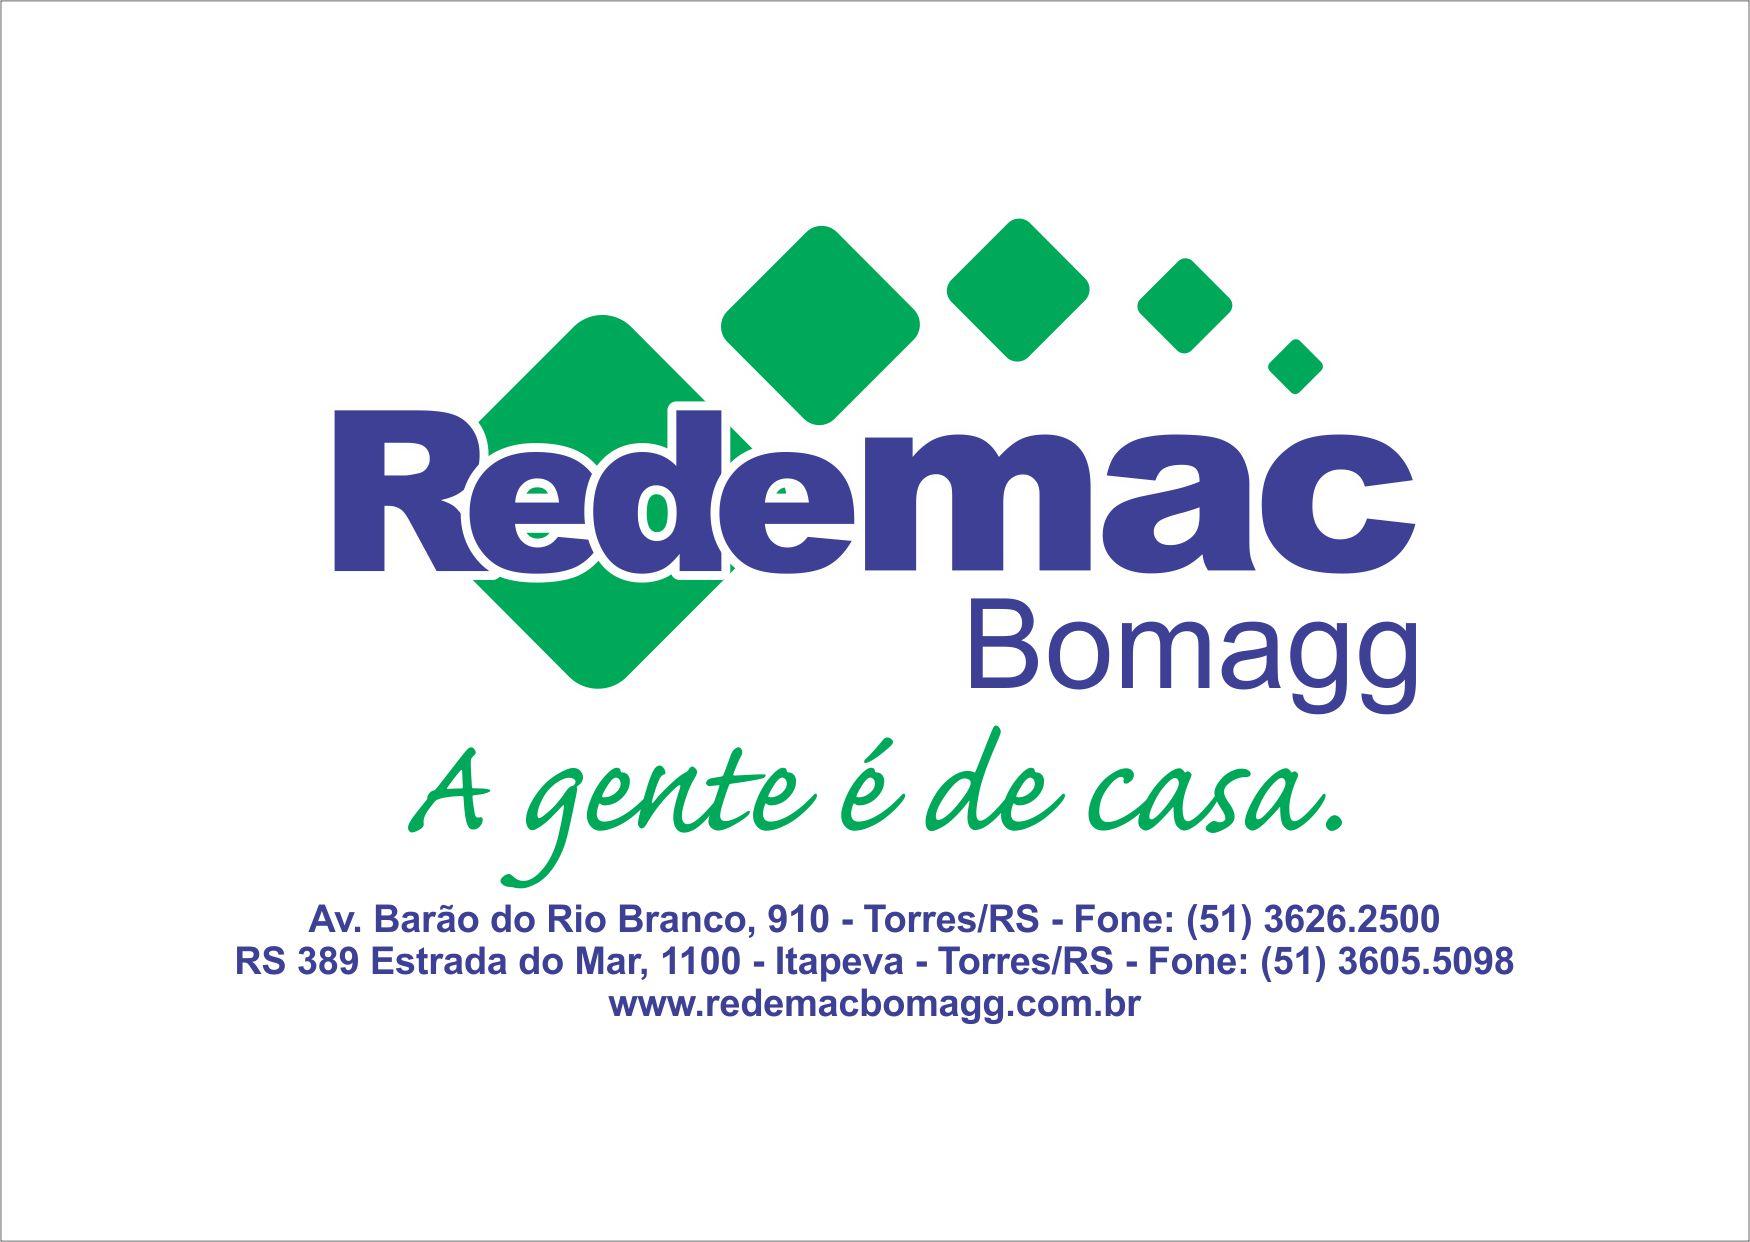 Redemac - Bomagg Materiais de Construção